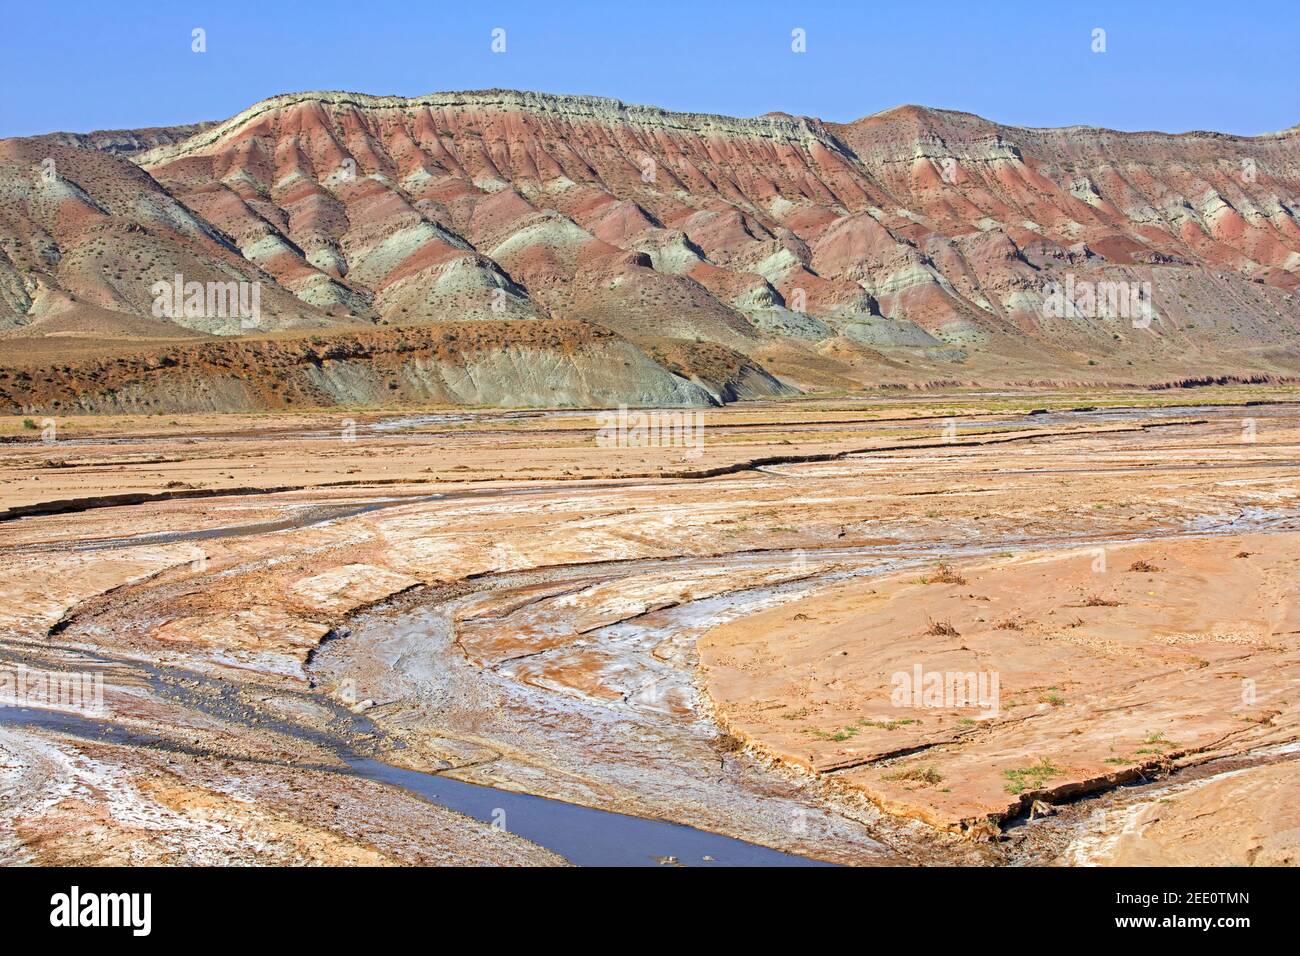 Paesaggio arbusto semi-arido dell'Azerbaigian che mostra la montagna con strati di sedimenti e il letto del fiume, Provincia dell'Azerbaigian orientale, Iran Foto Stock